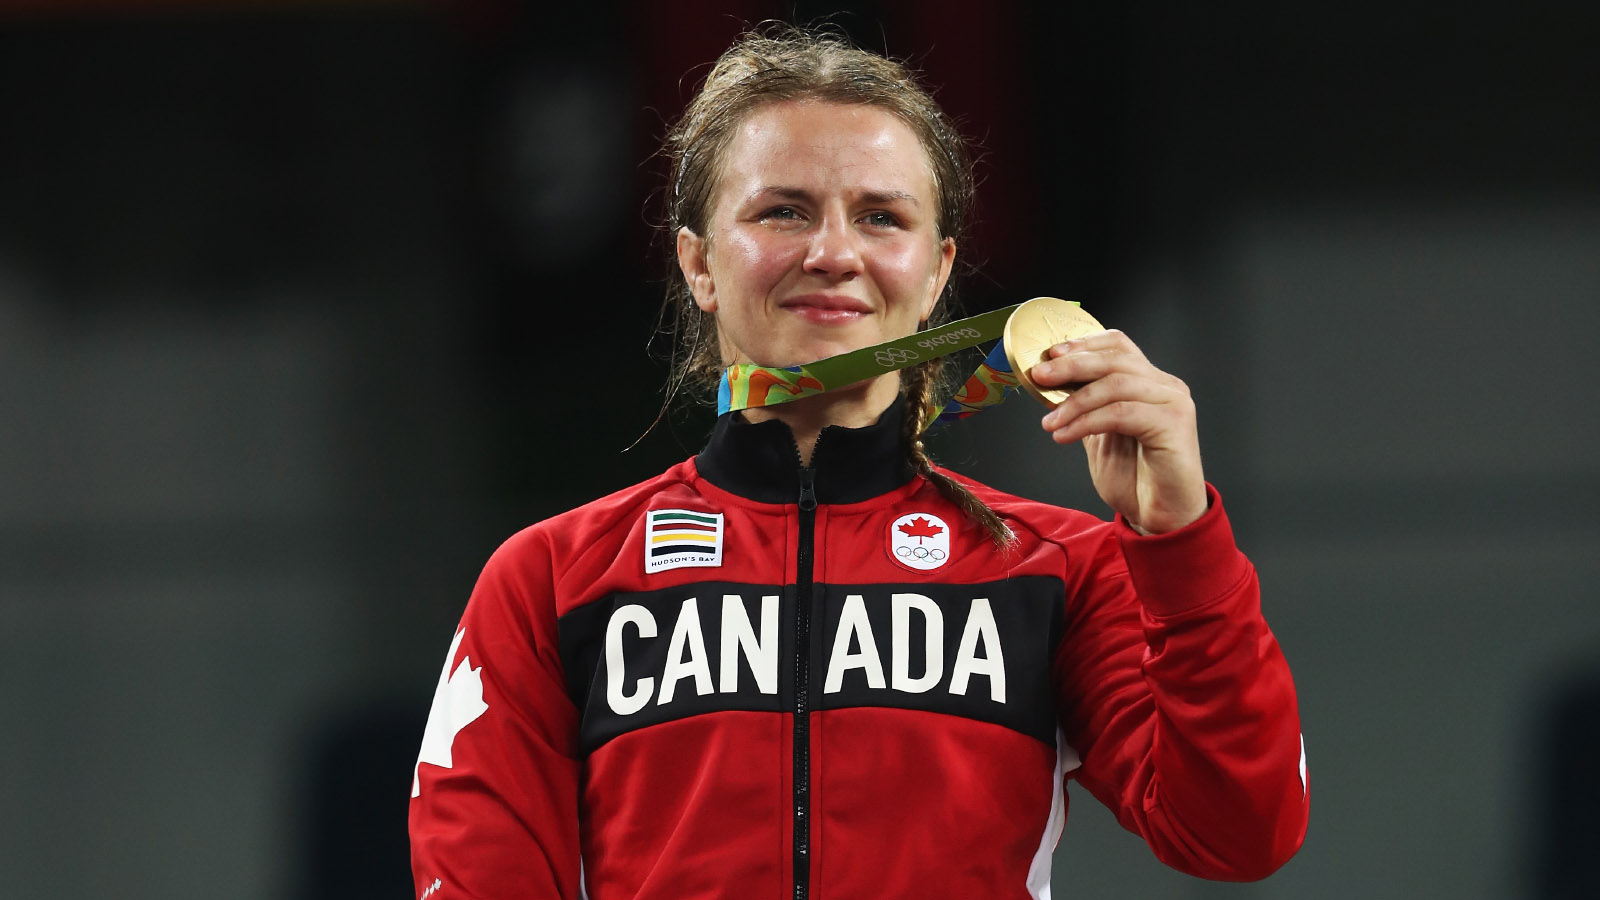 אריקה וויב, נבחרת קנדה בהיאבקות, באולימפיאדה בריו. (AP Photo/Manish Swarup)